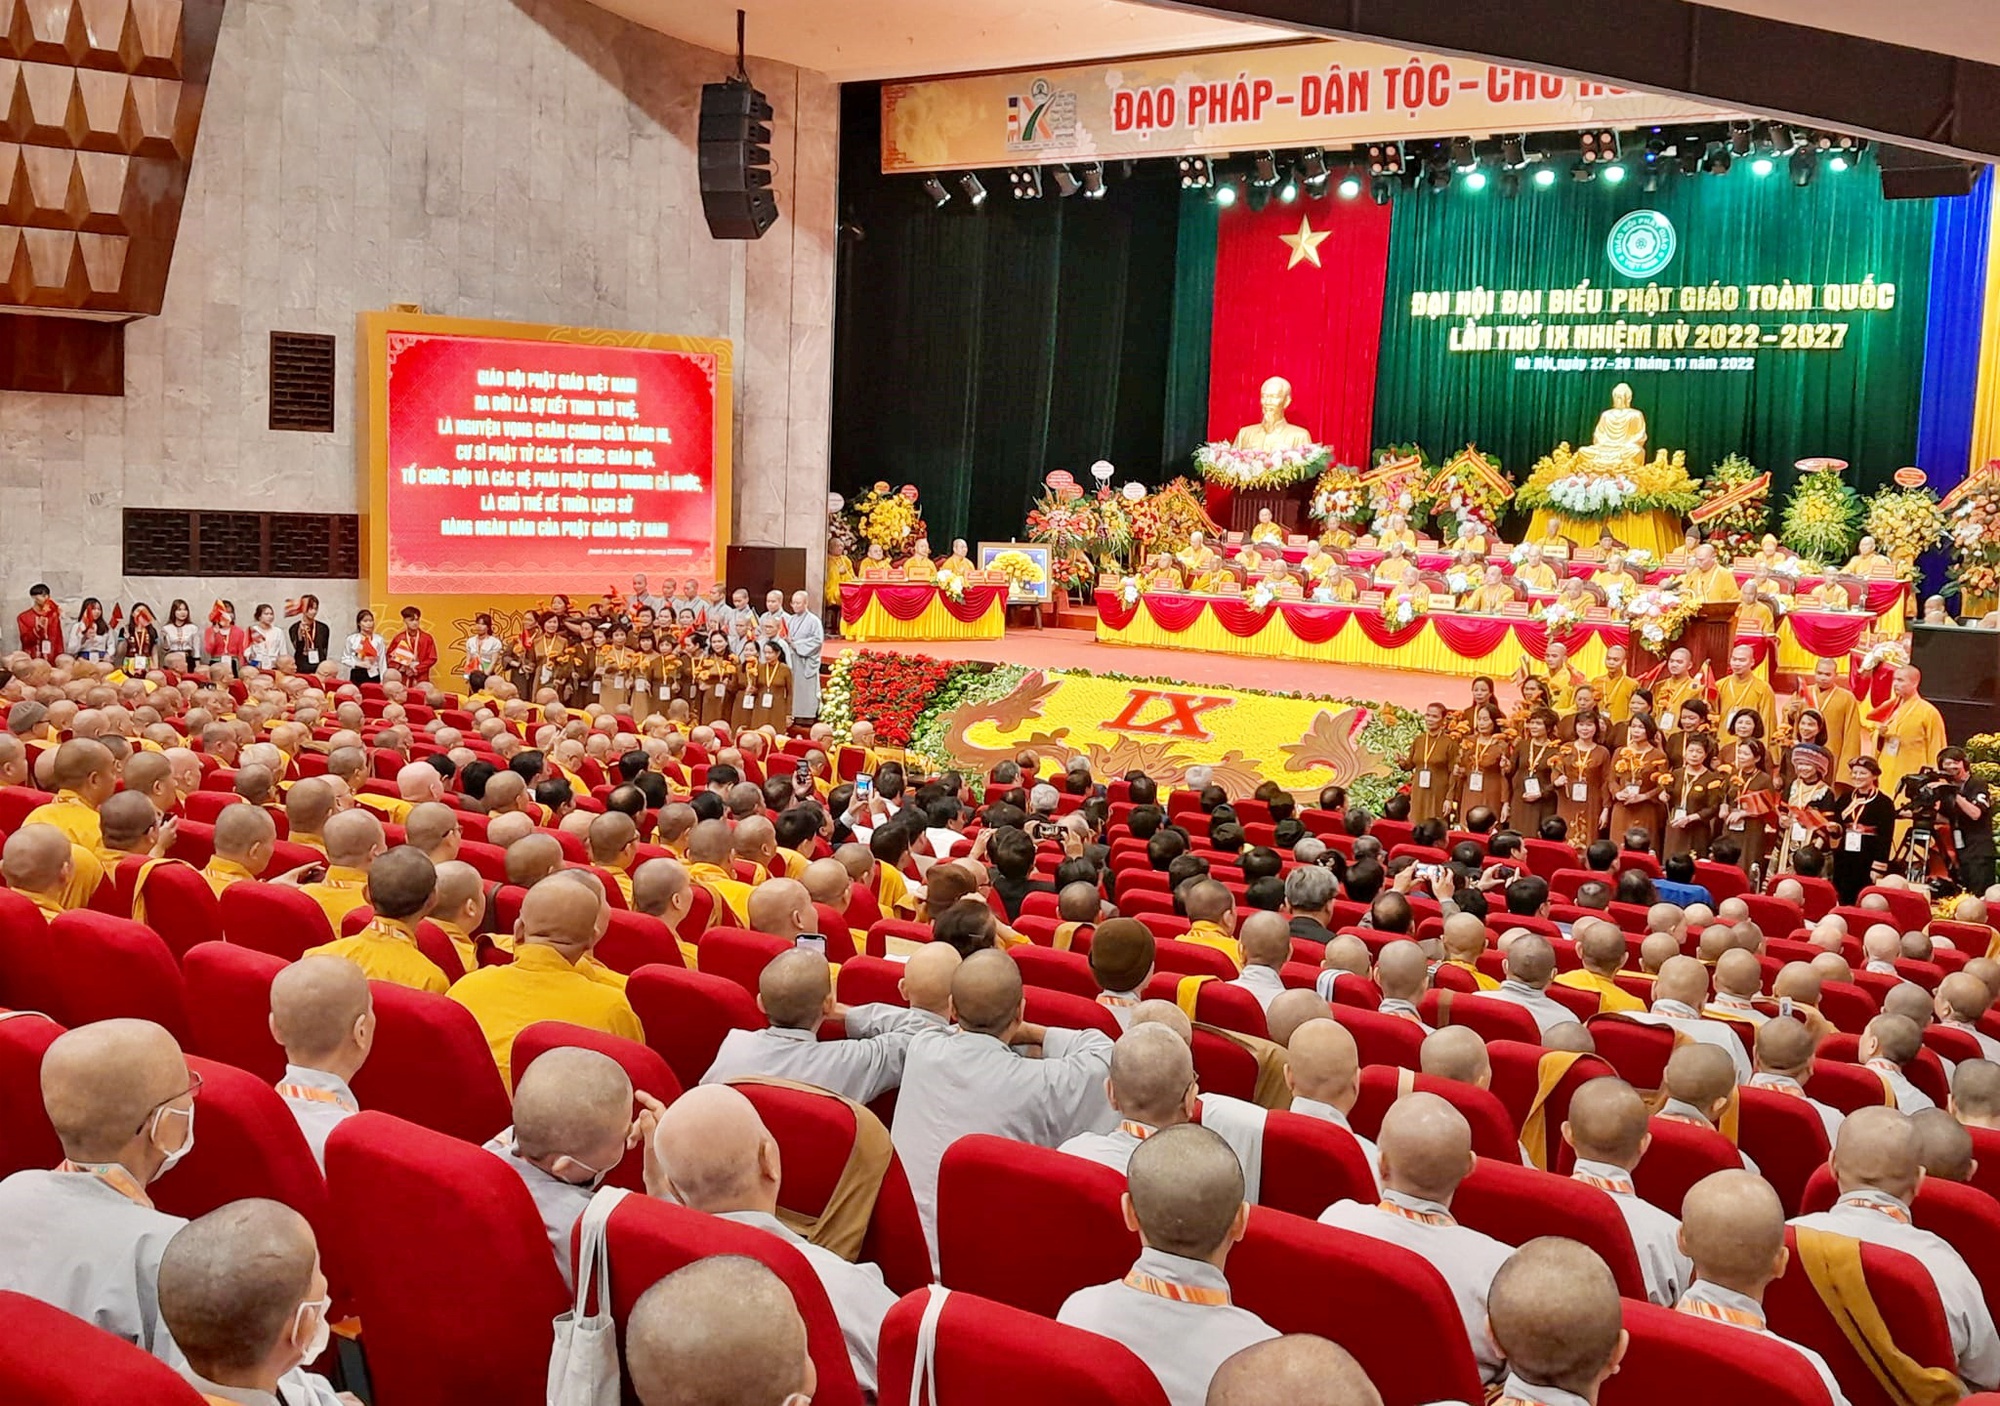 Khai mạc Đại hội Đại biểu Phật giáo toàn quốc lần thứ IX  - Ảnh 2.